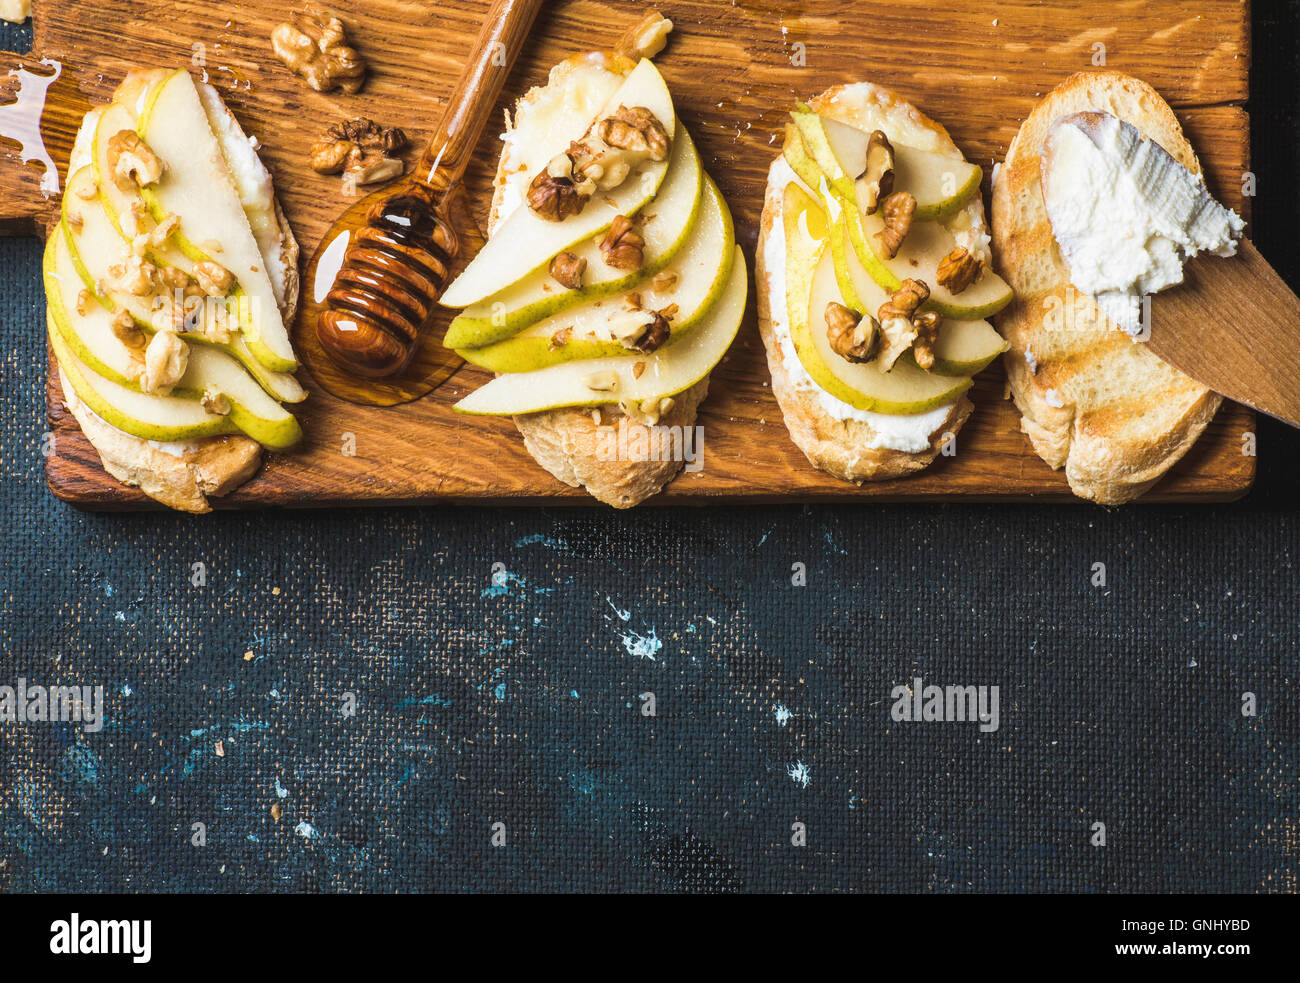 Crostini di pera, ricotta, miele e noci. La colazione toast o panini snack rustico di legno su blu scuro Foto Stock